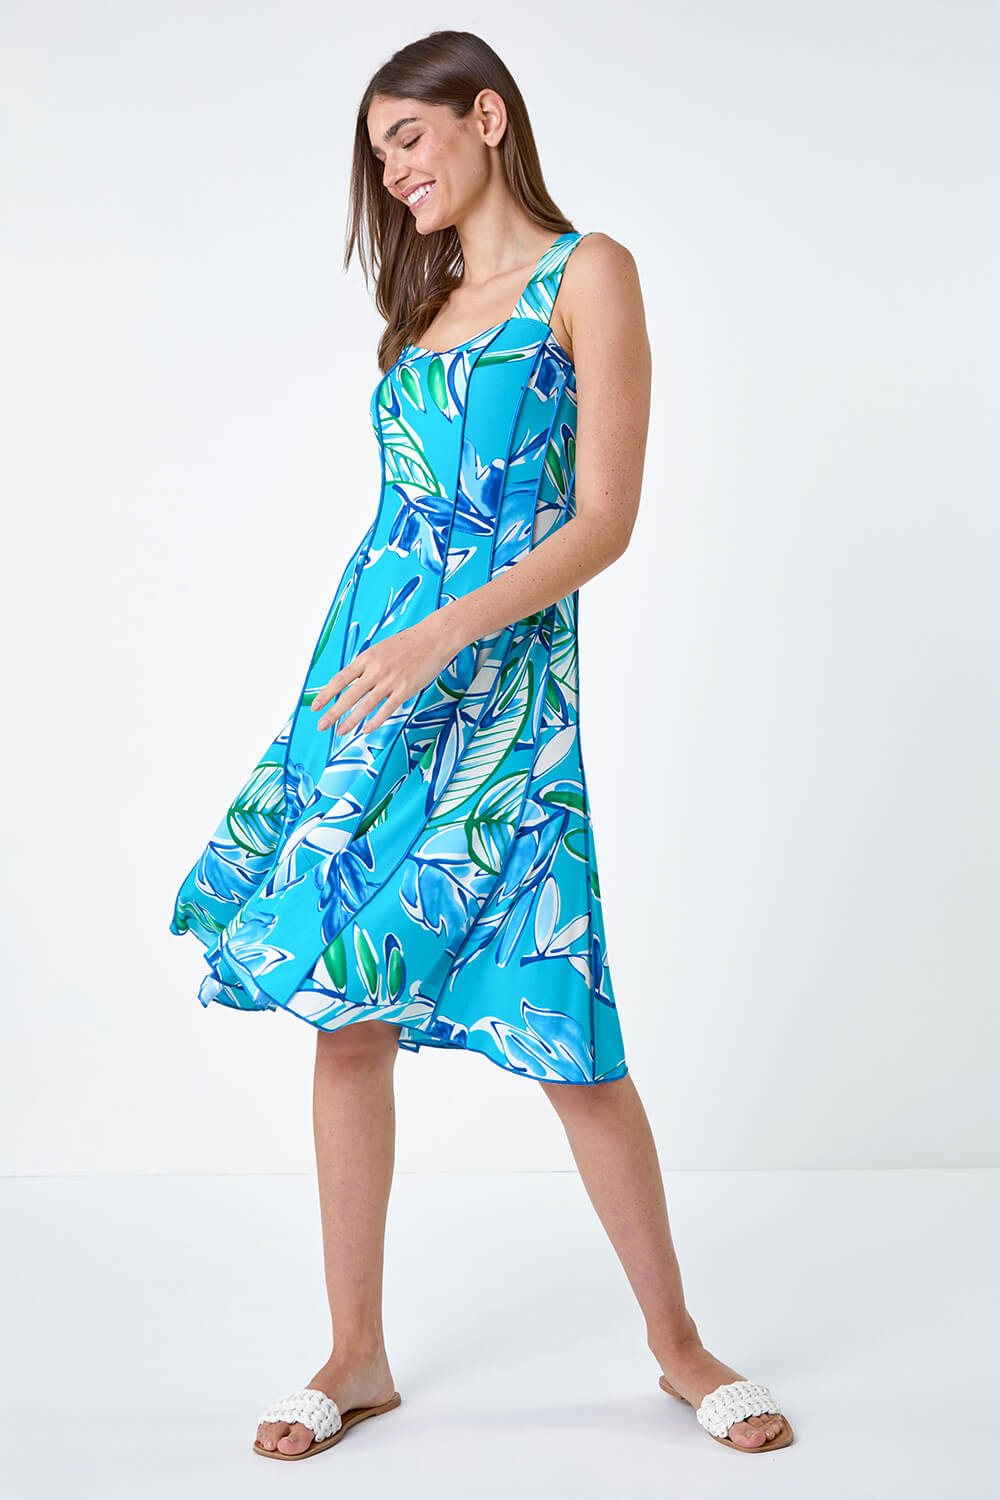 Aqua Leaf Print Stretch Panel Dress, Image 2 of 5